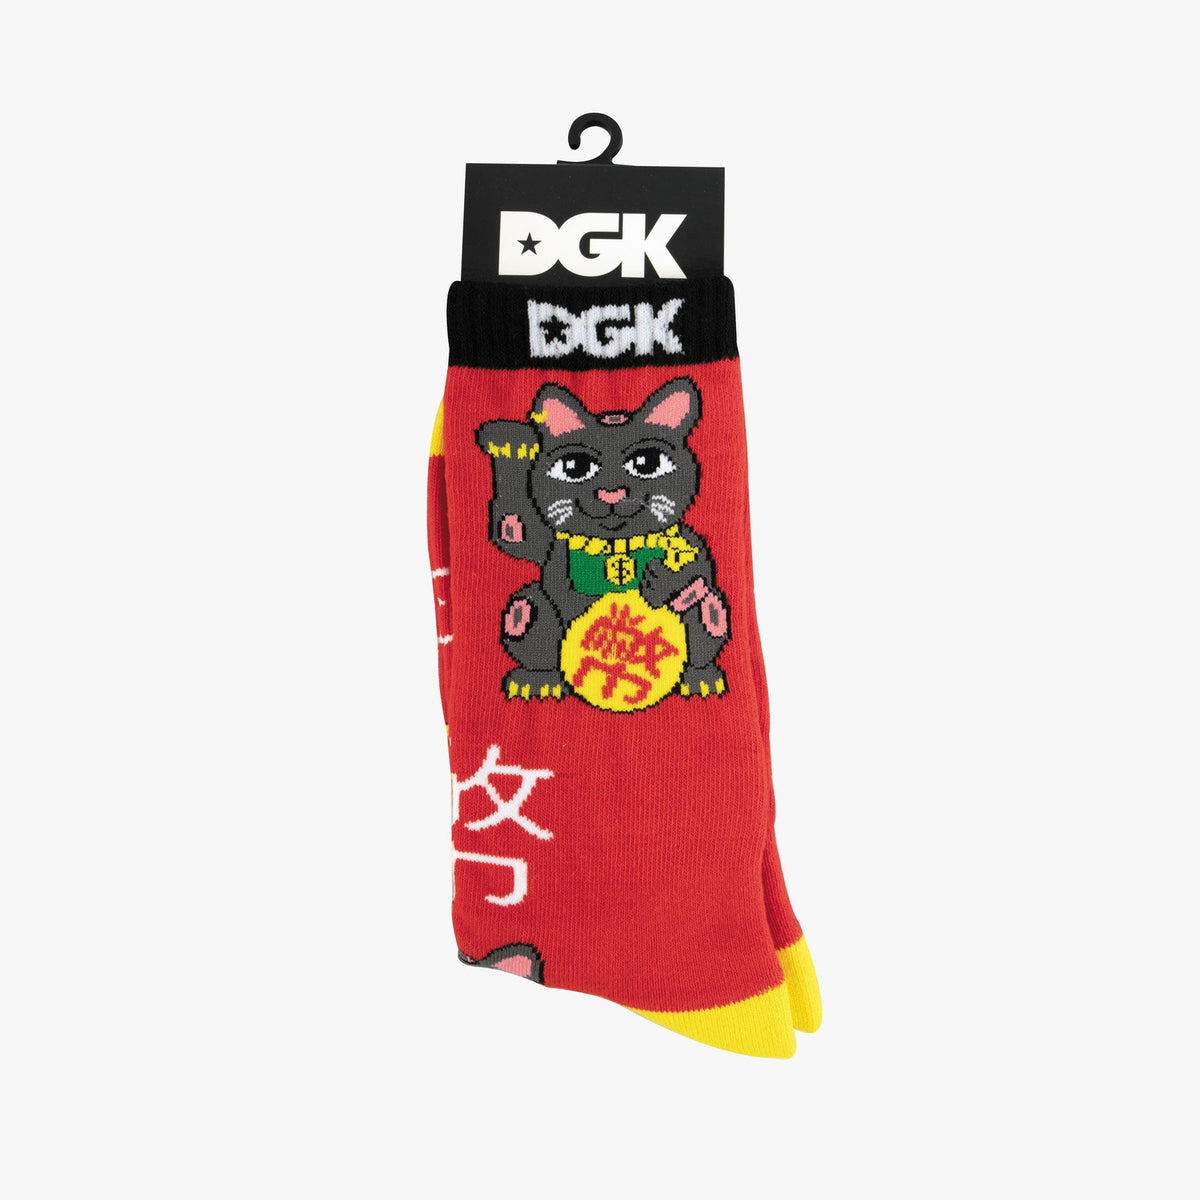 Dgk Good Luck Crew Socks